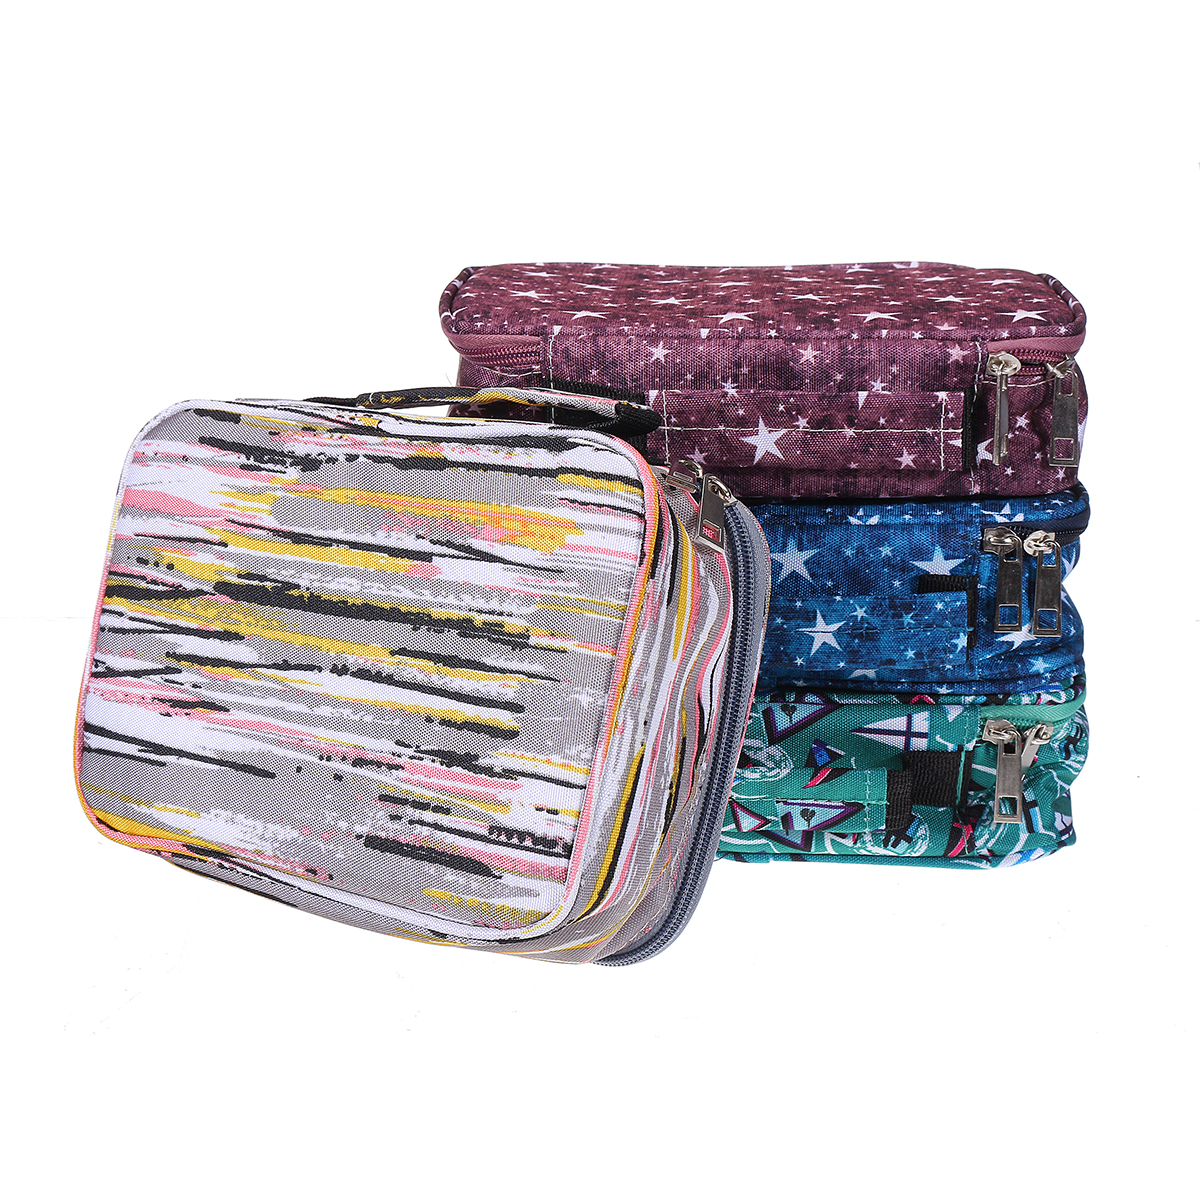 72 Holes Pencil Bag Multifunction Pencil Cases 36 Colors Pen Storage Bag Case Pen Makeup Brush for Student School Supplies—3